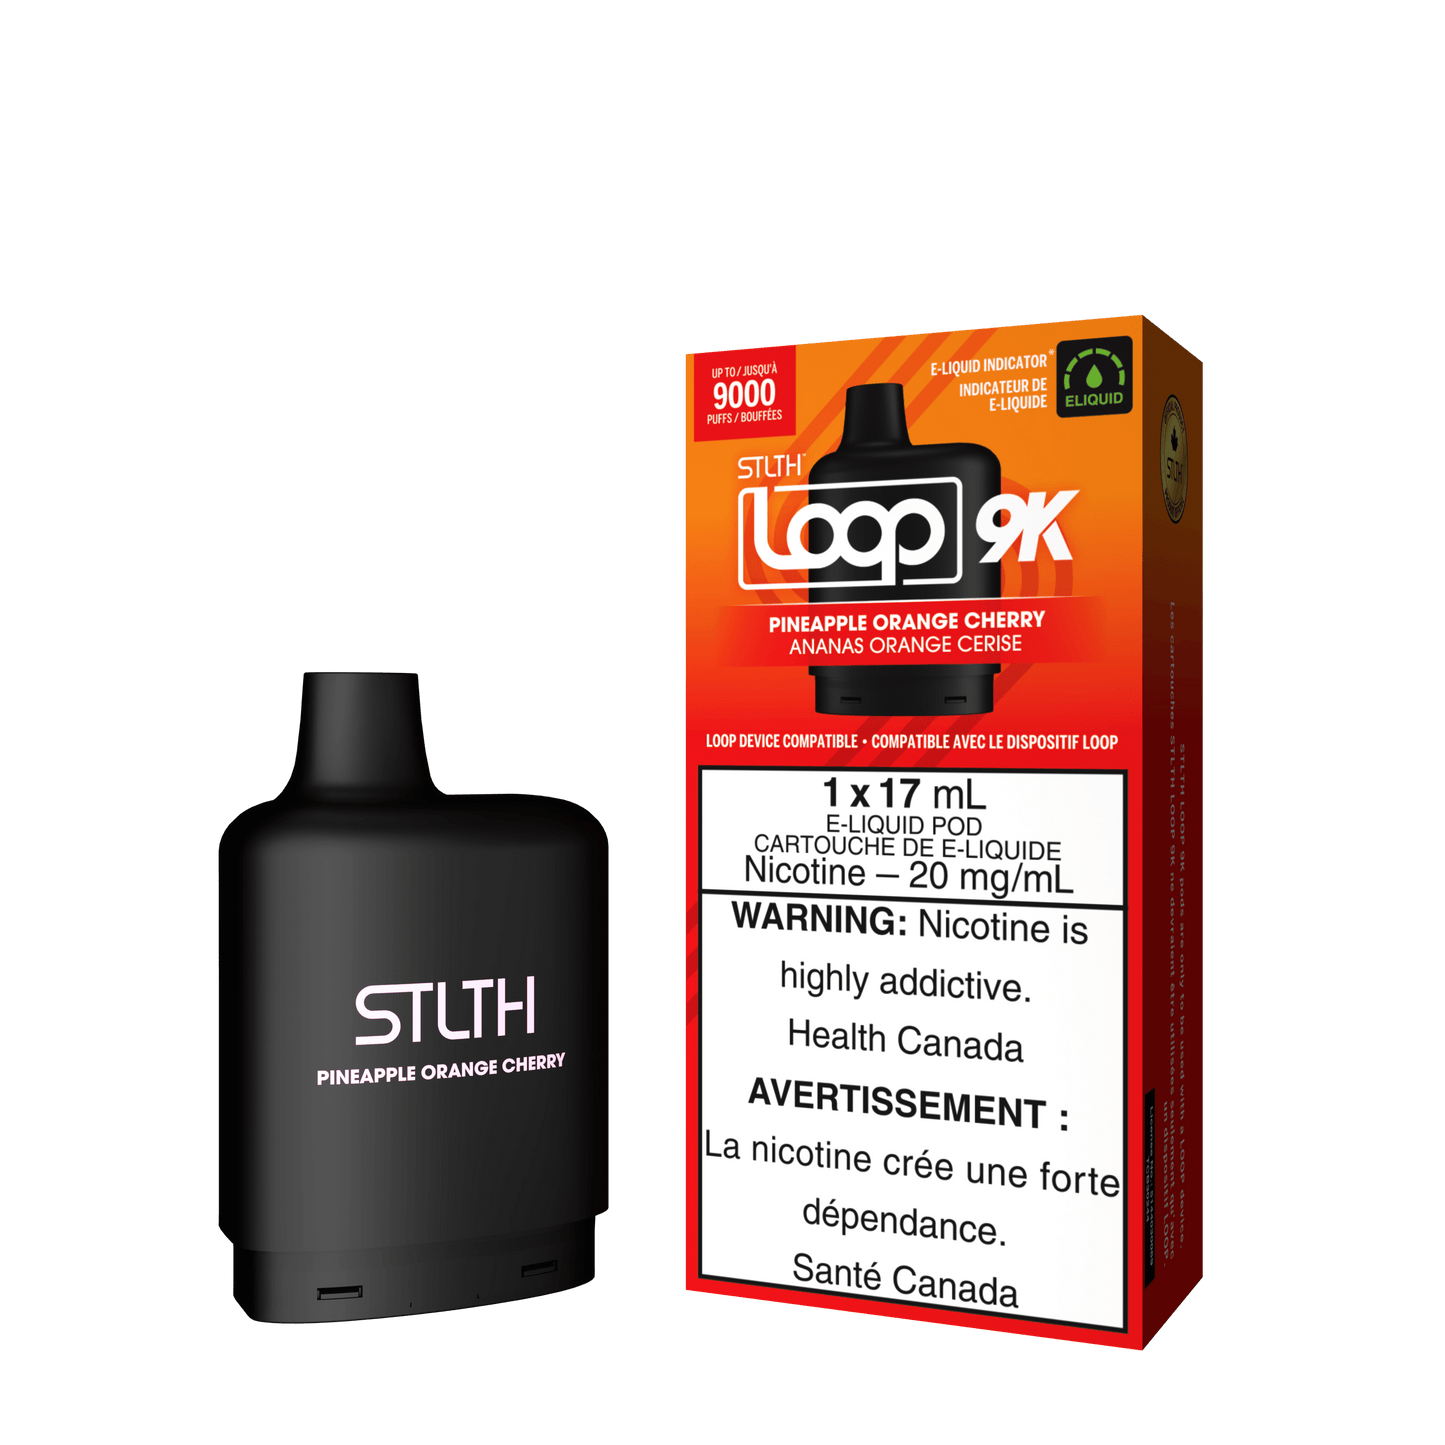 STLTH Loop 9K - Pineapple Orange Cherry